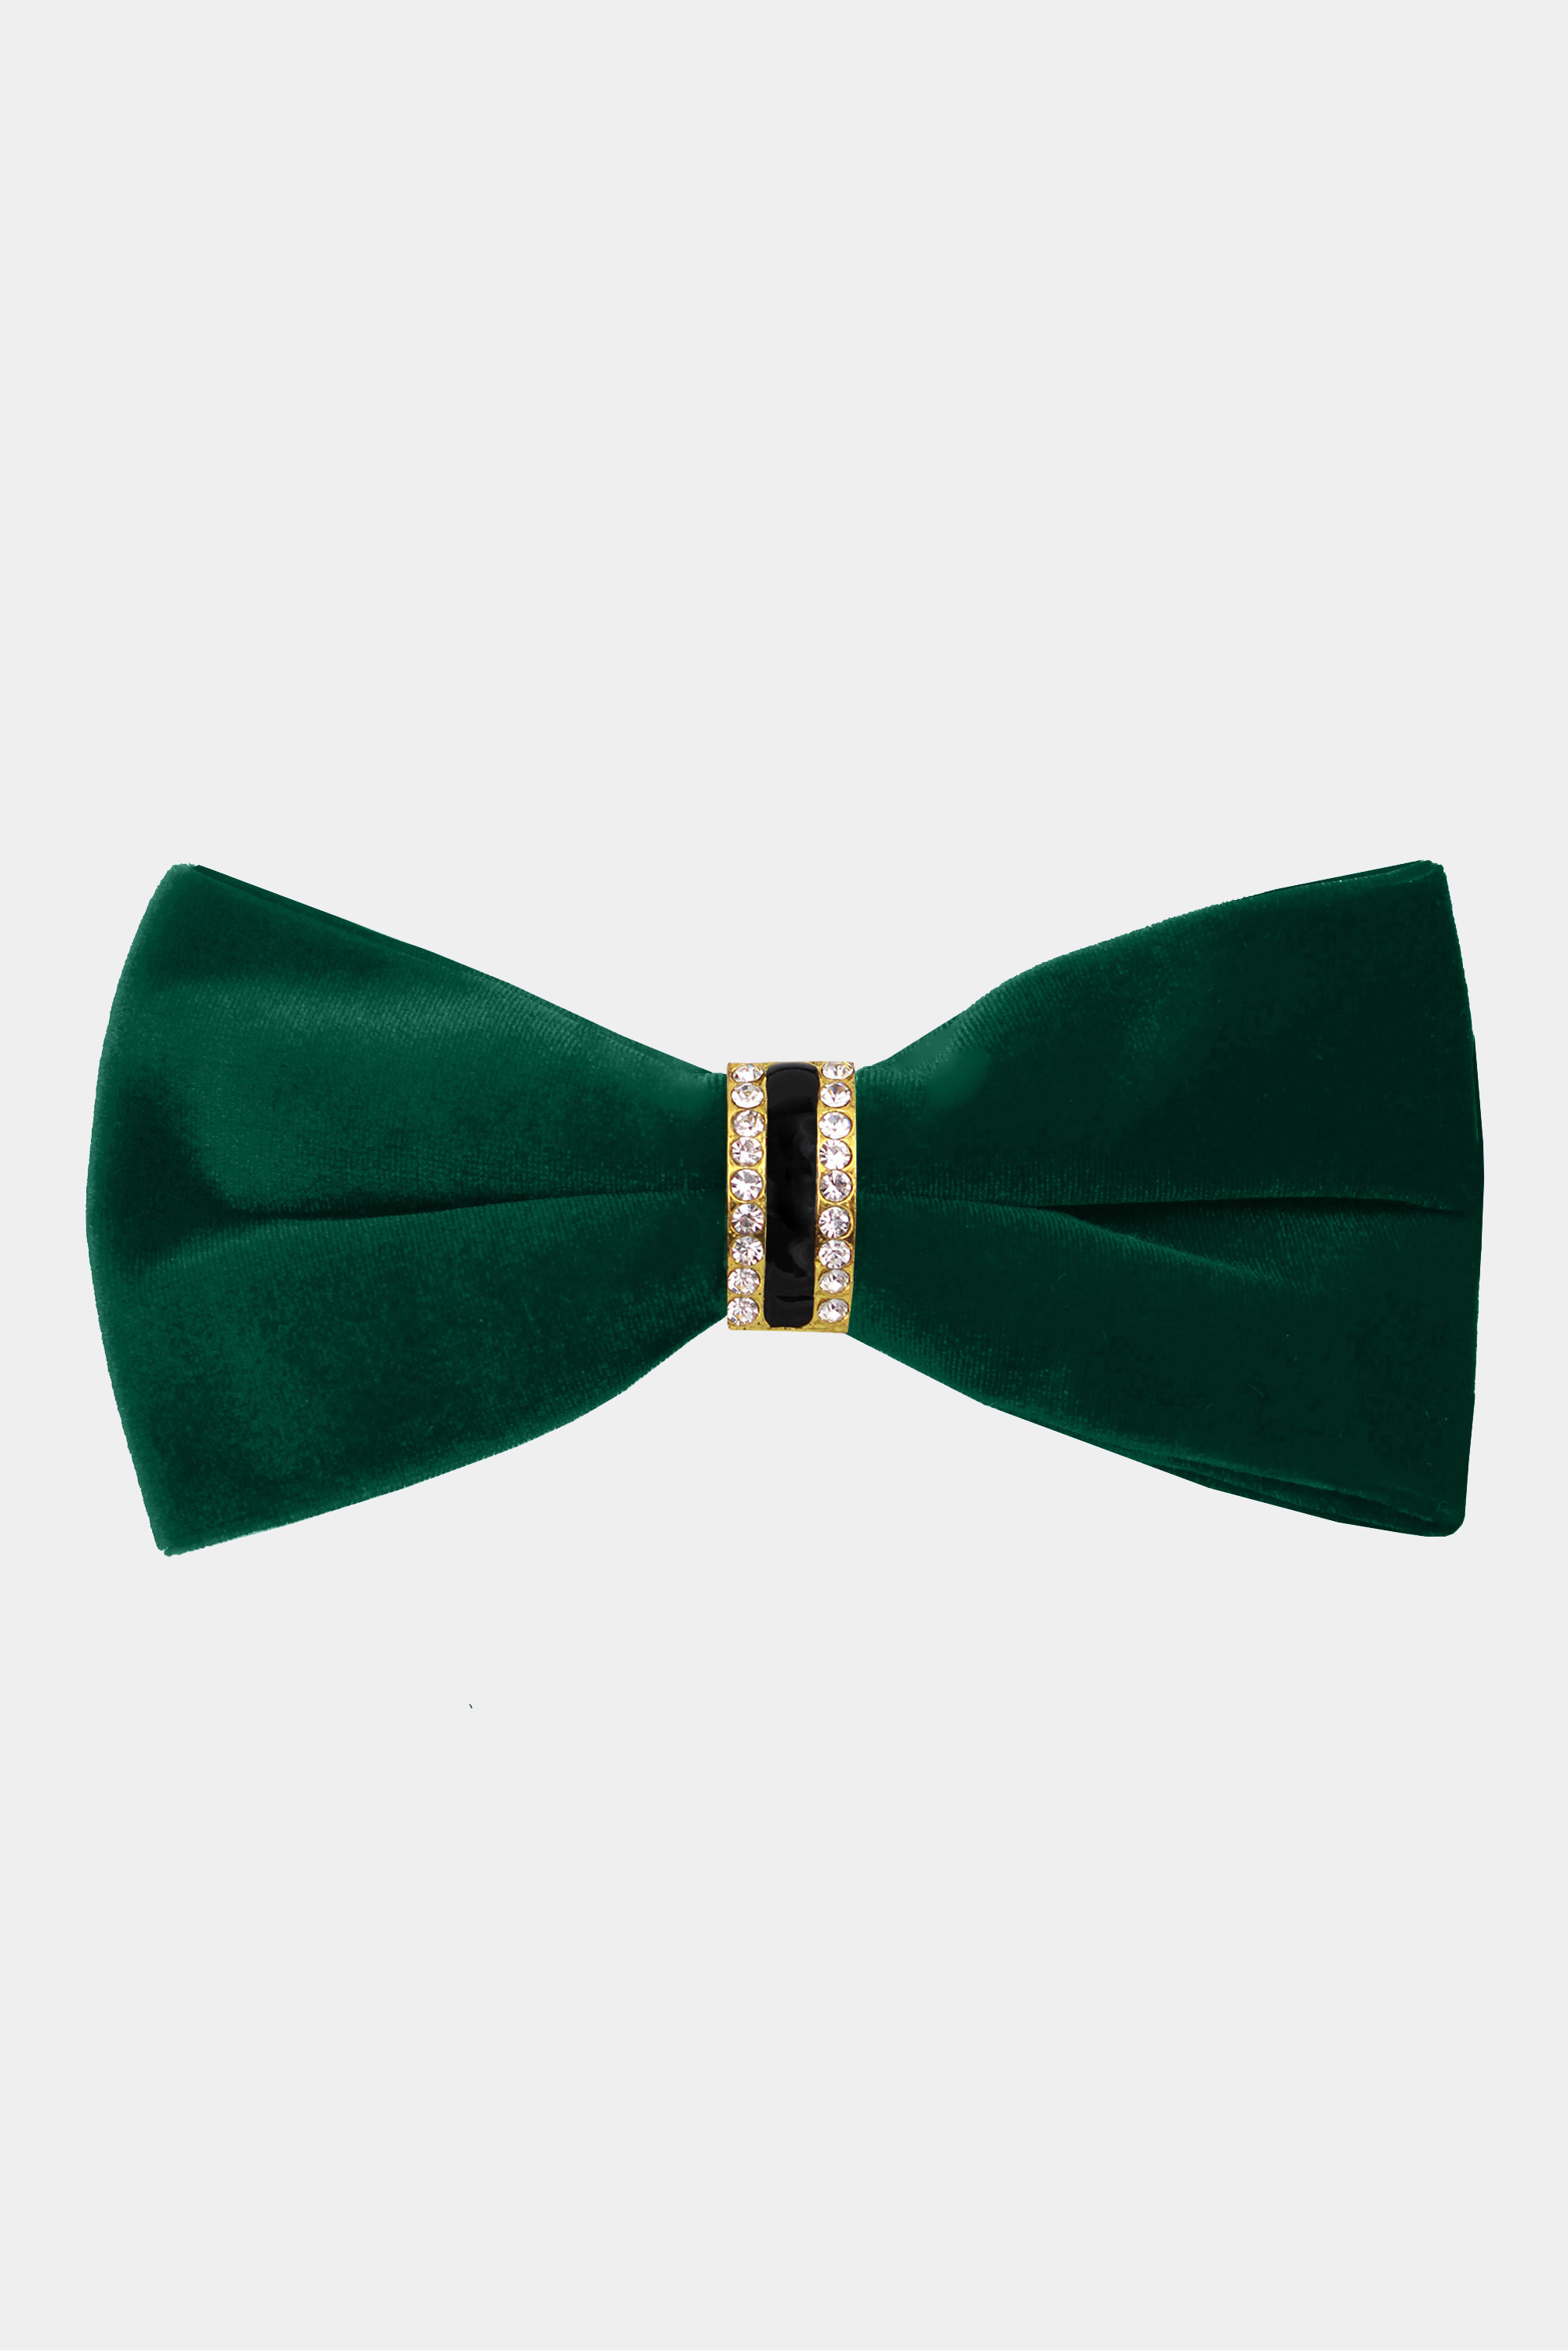 Mens-Emerald-Green-Velvet-Bow-Tie-Crystal-Luxury-Fancy-Bowtie-from-Gentlemansguru.com